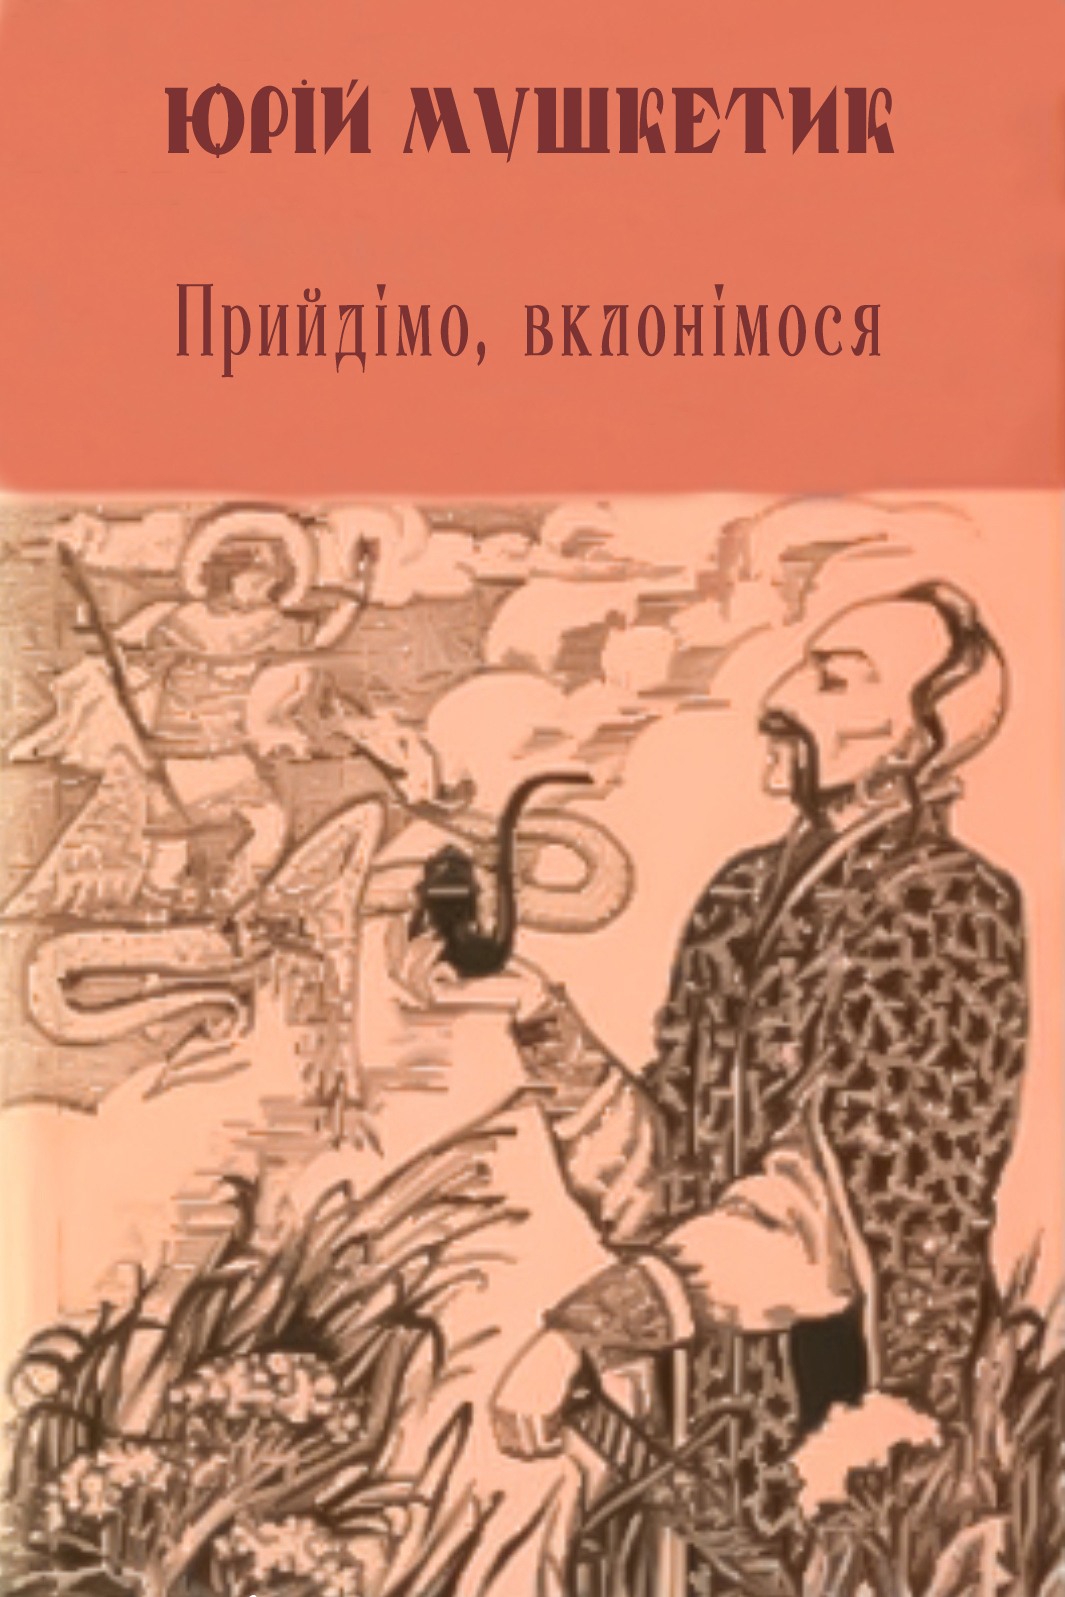 Прийдімо, вклонімося - Юрій Мушкетик - Слухати Книги Українською Онлайн Безкоштовно 📘 Knigi-Audio.com/uk/